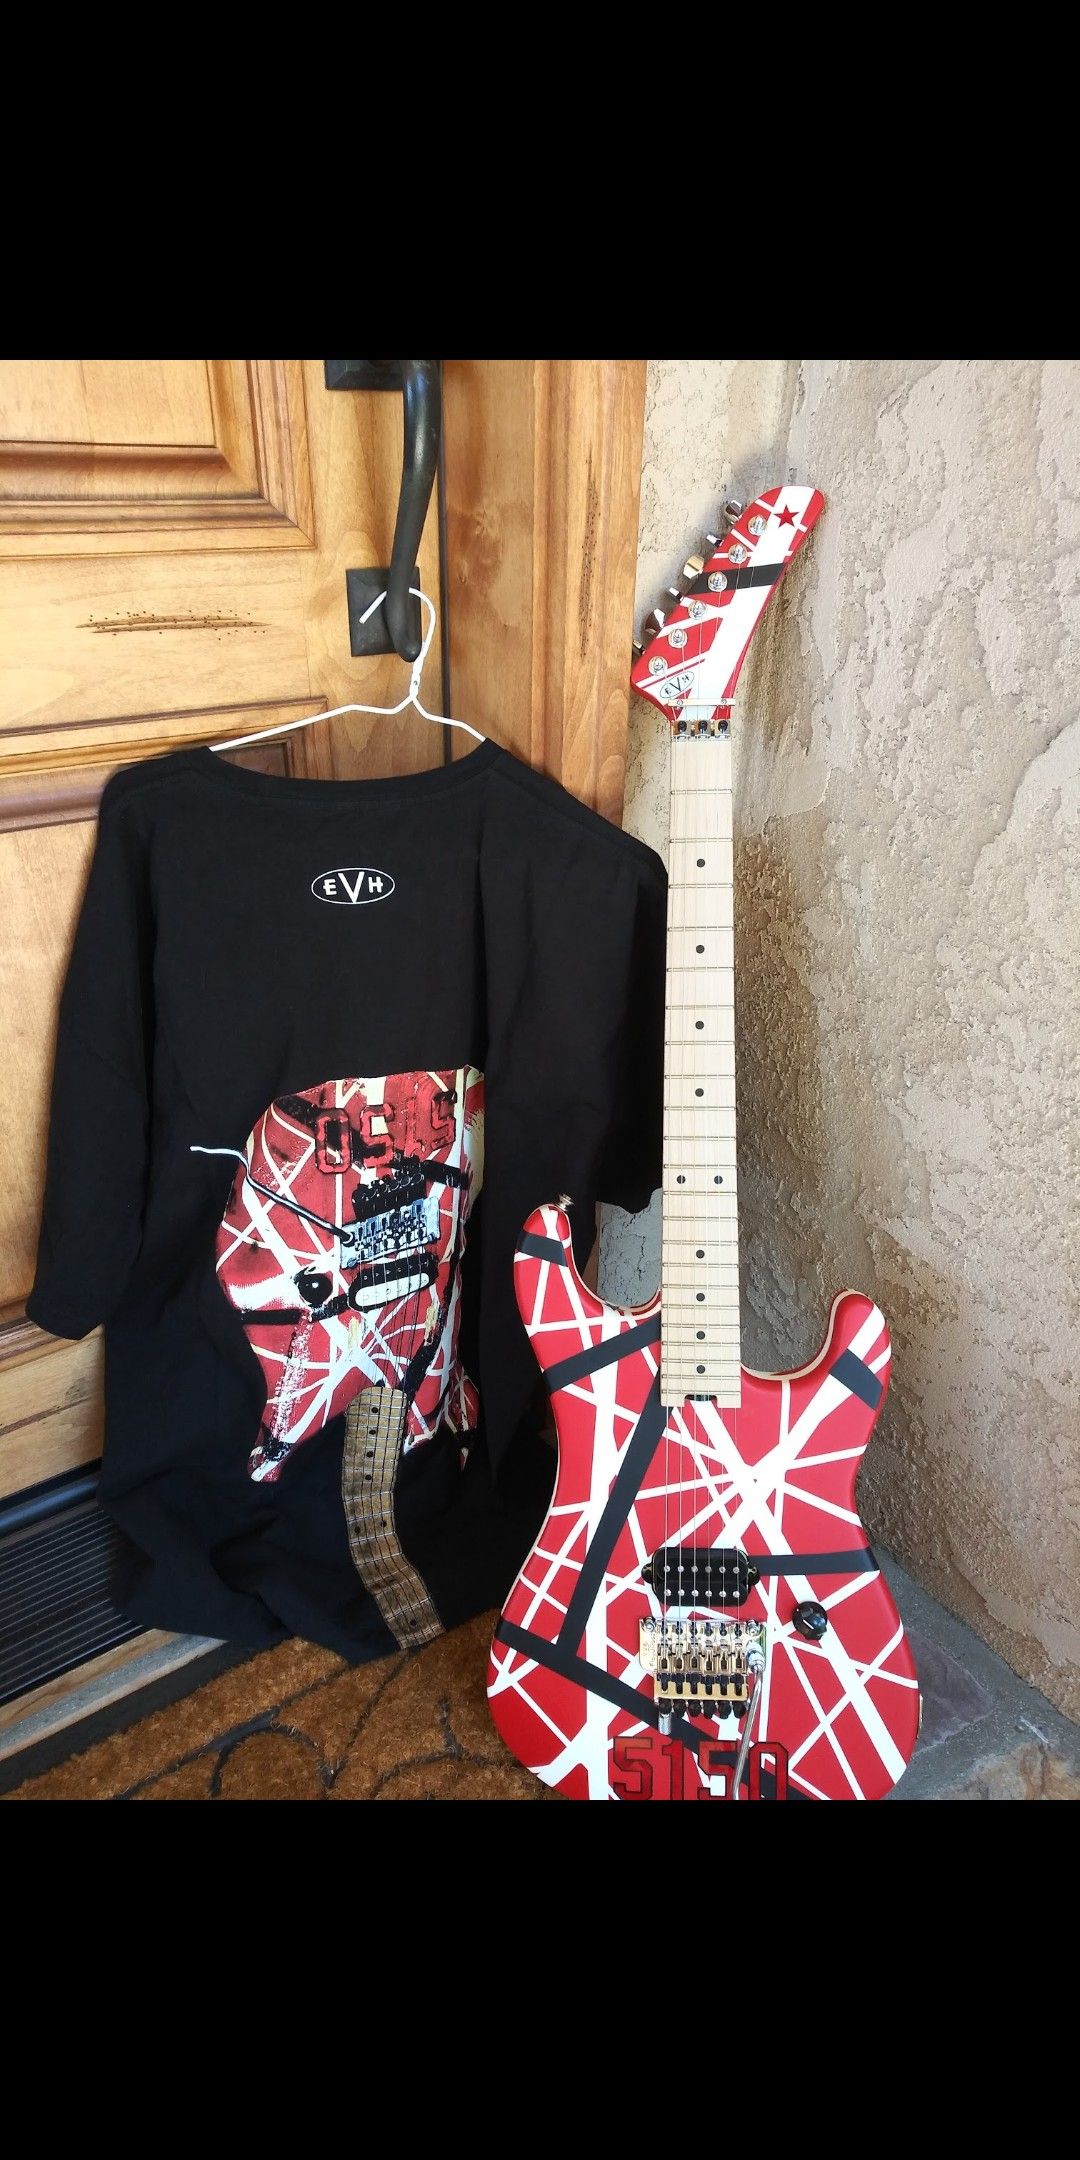 EVH Gear 5150 Guitar